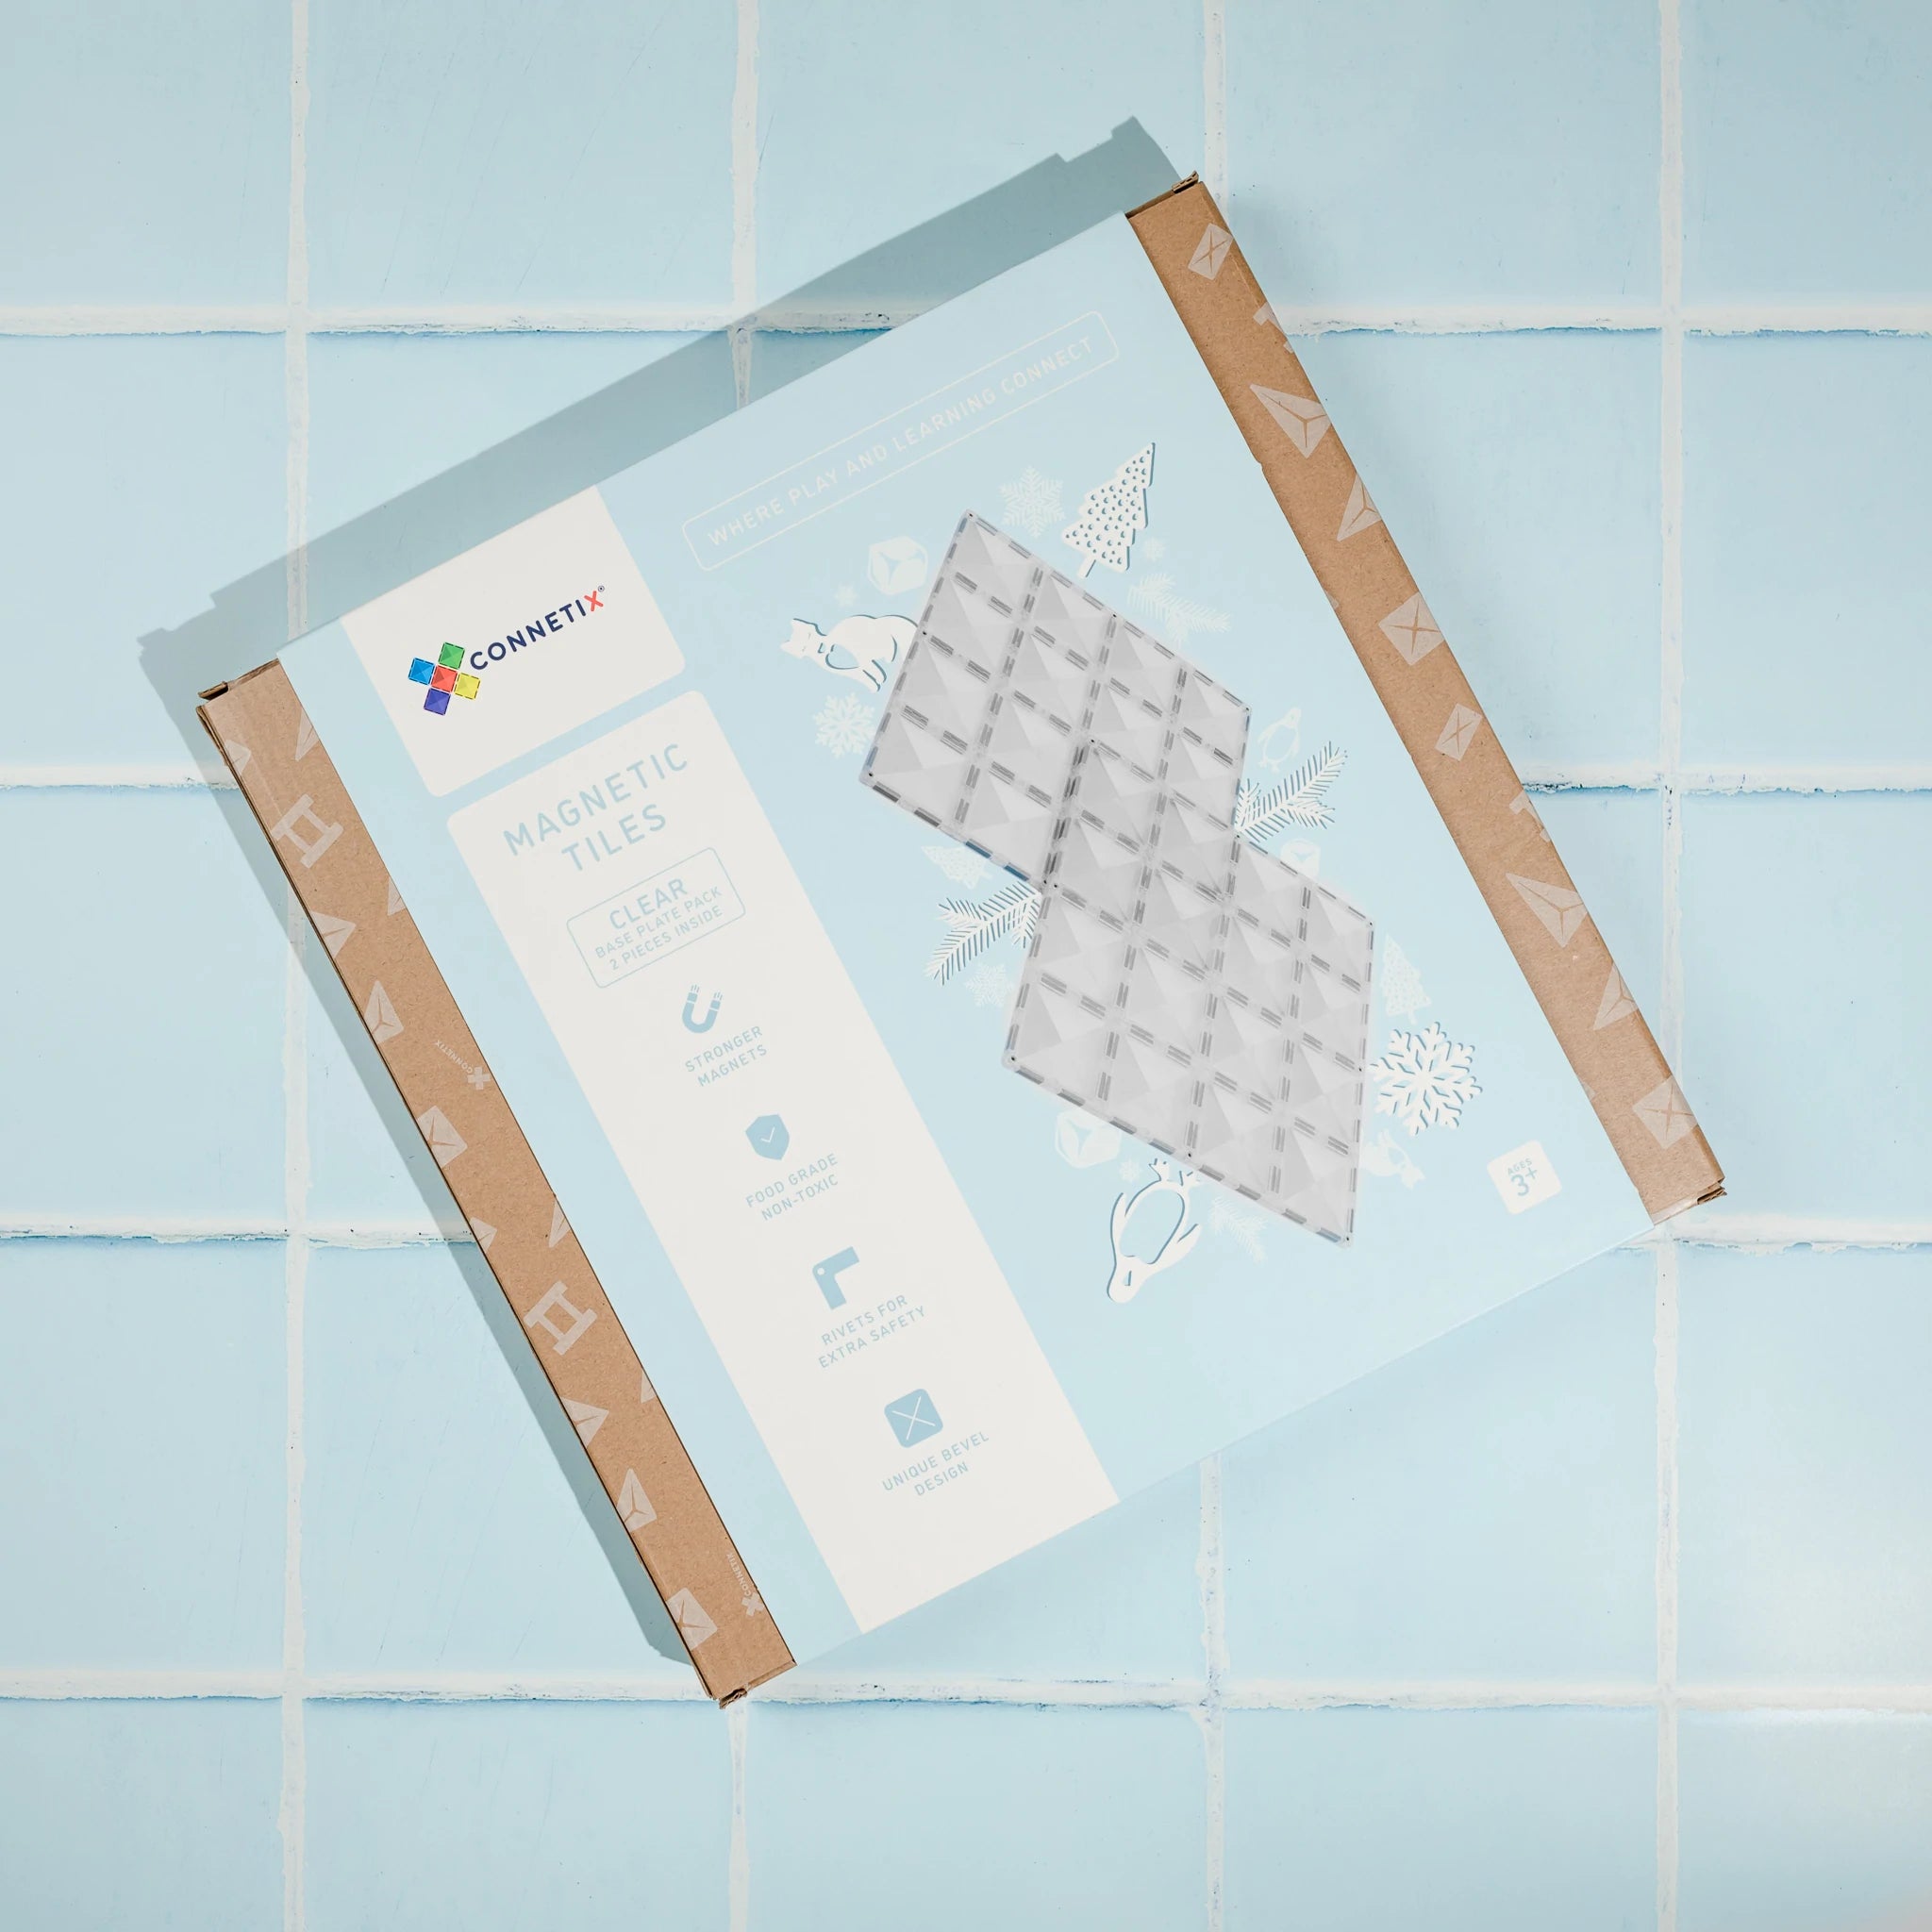 Connetix Tiles Magnetic Building Tiles Clear Base Plate – 2 Piece Set